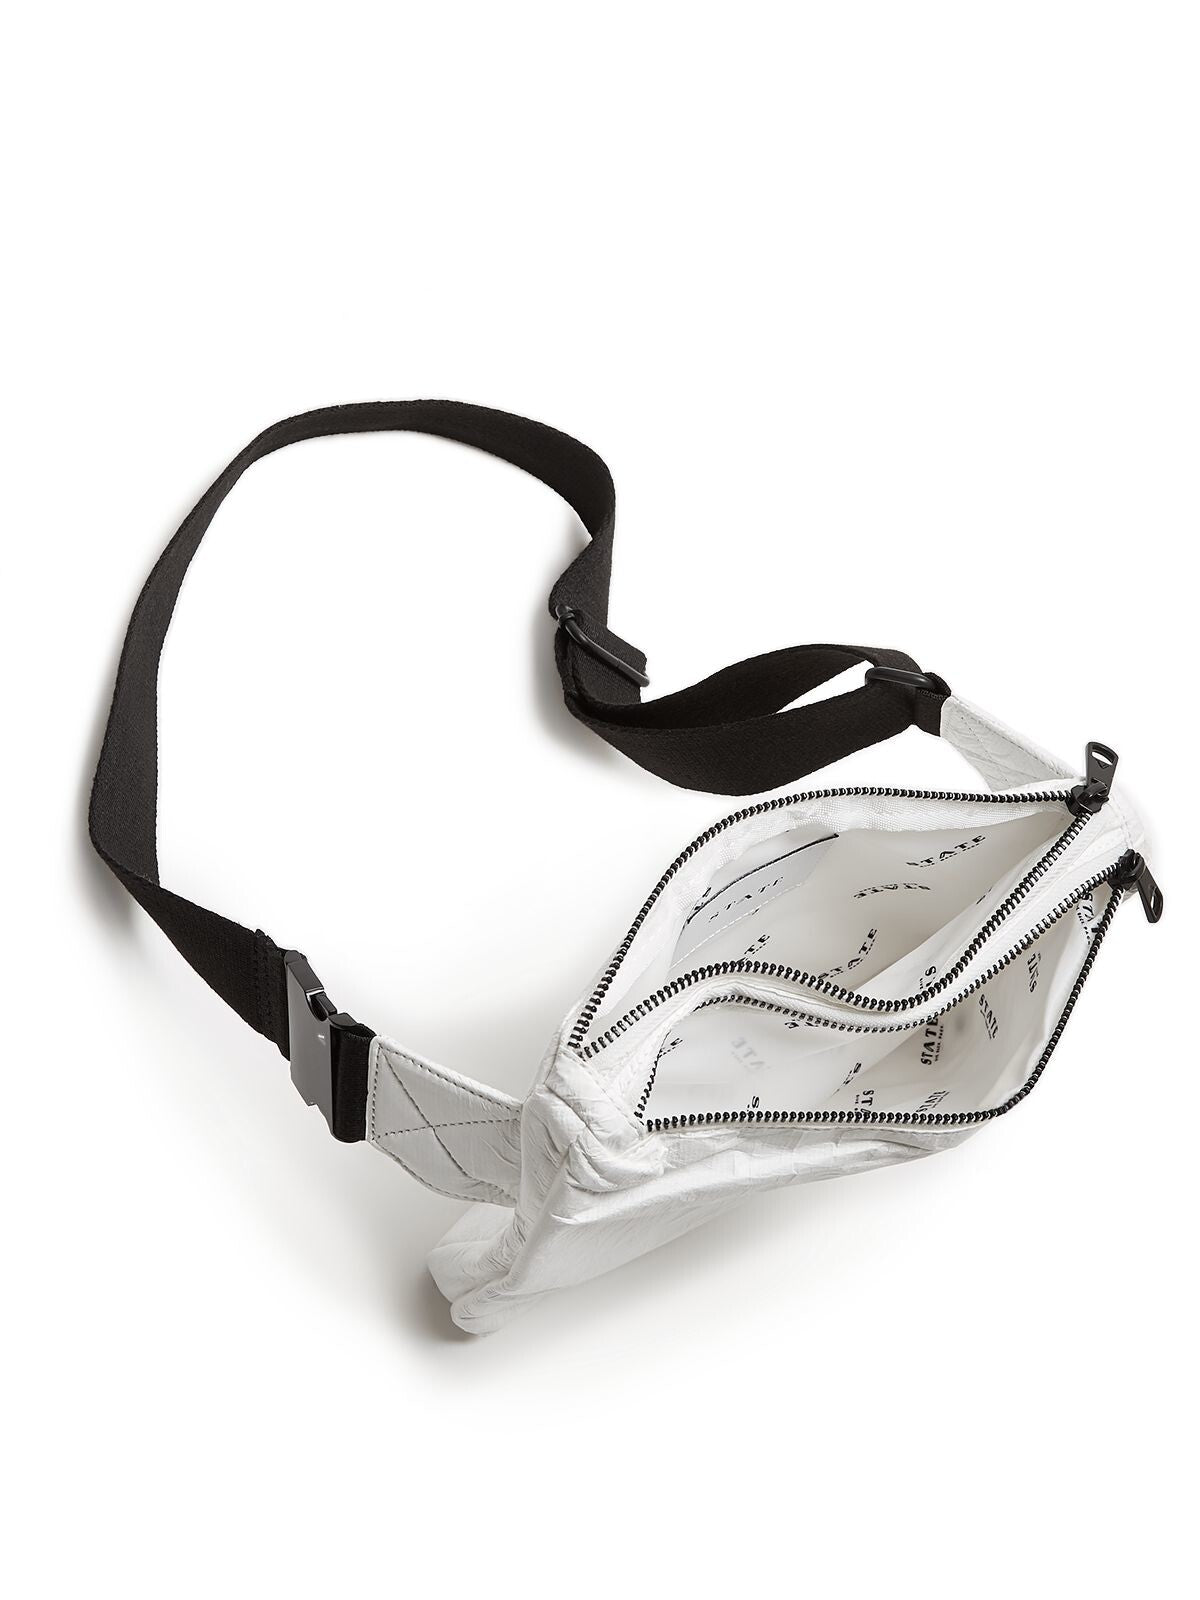 STATE Women's White Webster Buckle Adjustable Strap Belt Bag Purse